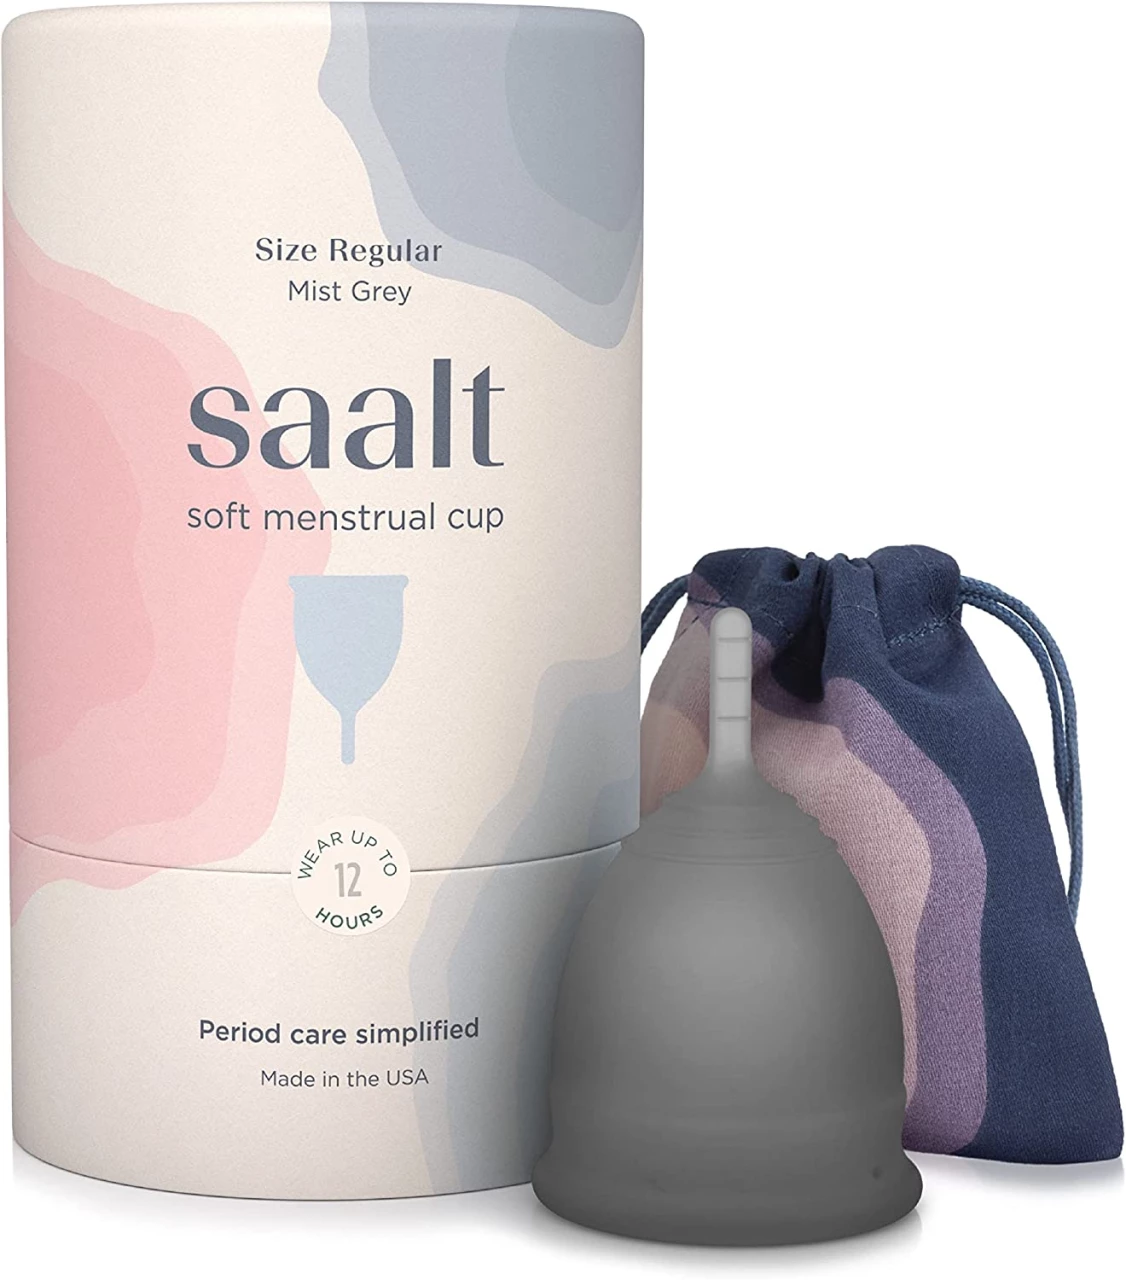 Saalt Soft Copa menstrual suave, súper suave y flexible, la mejor copa menstrual, para llevar durante 12 horas, fabricada en EE. UU (gris, regular)